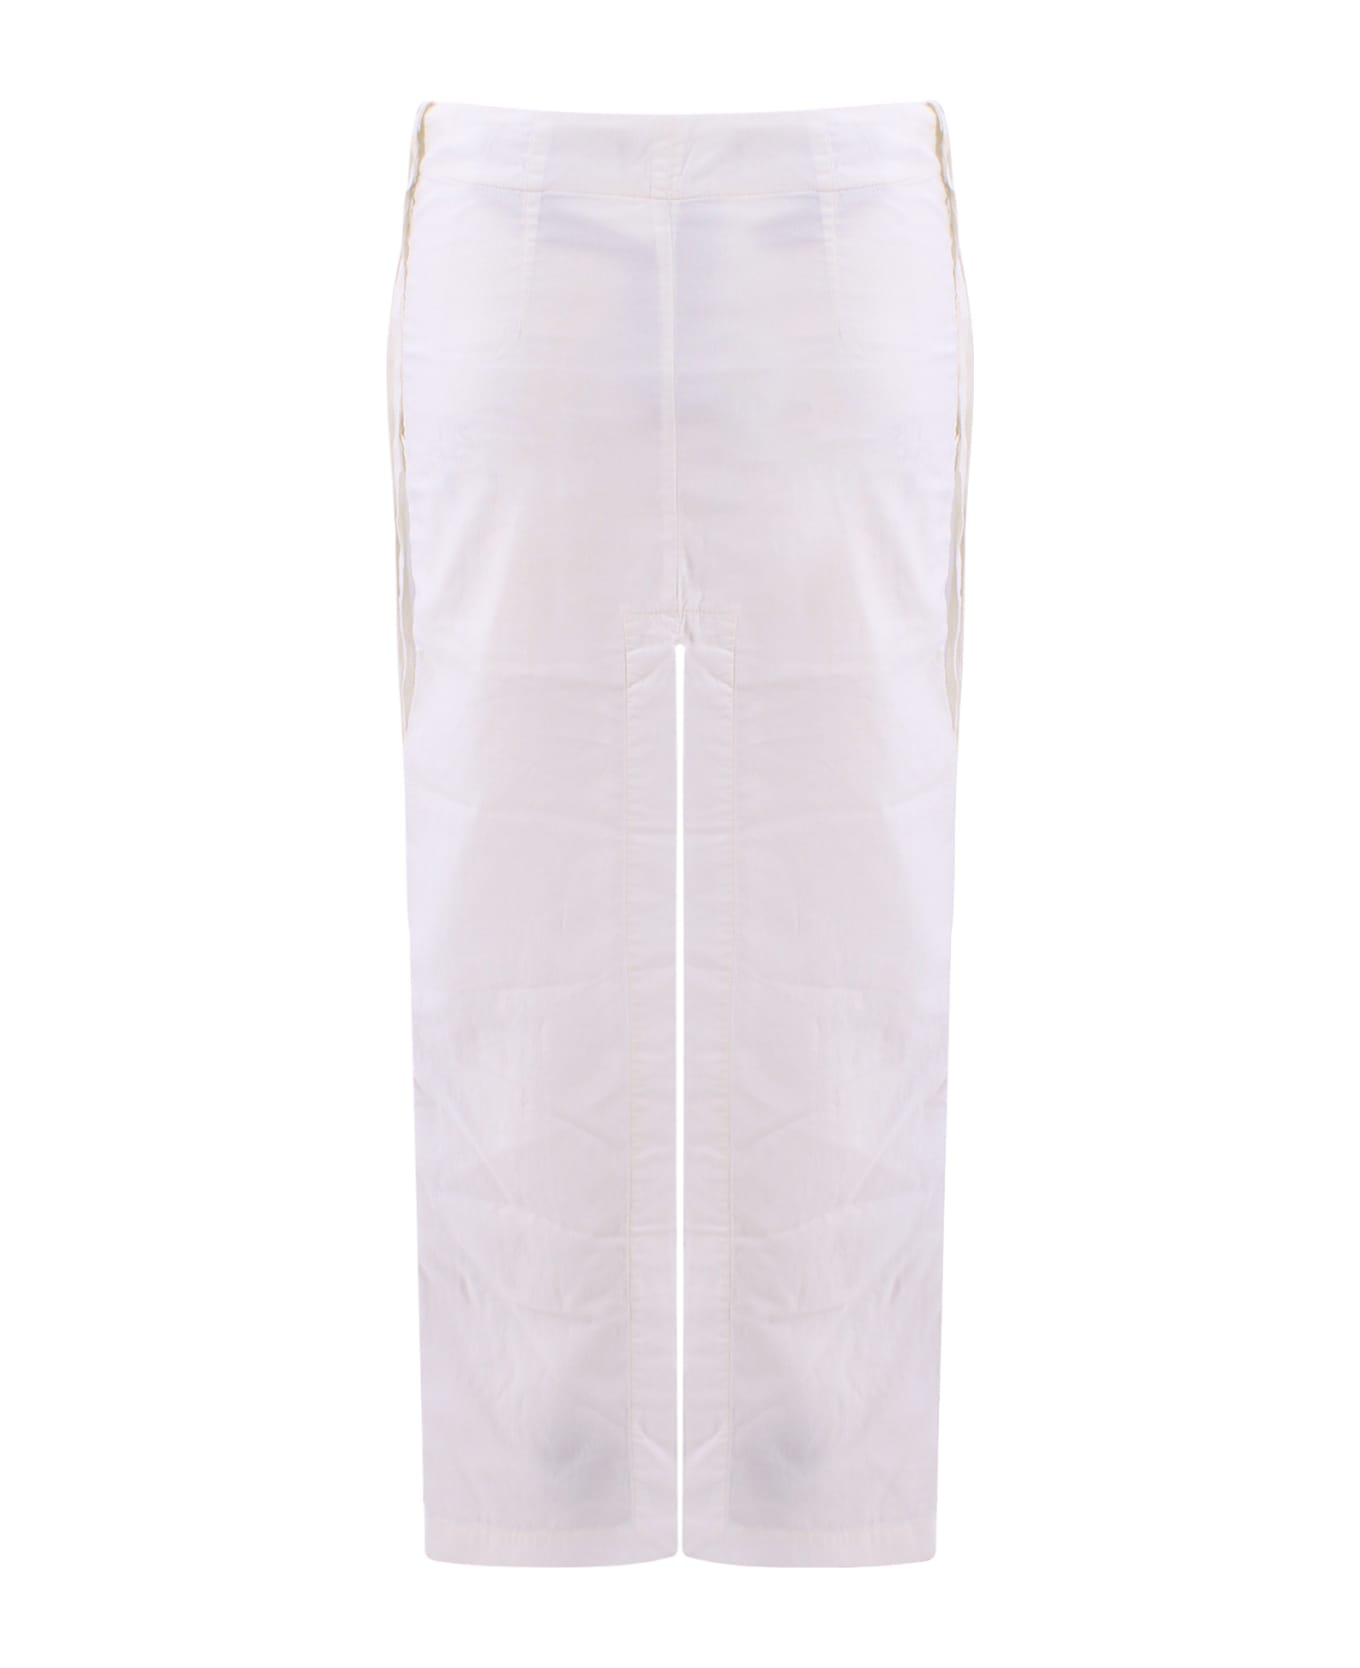 Ann Demeulemeester Skirt - White スカート